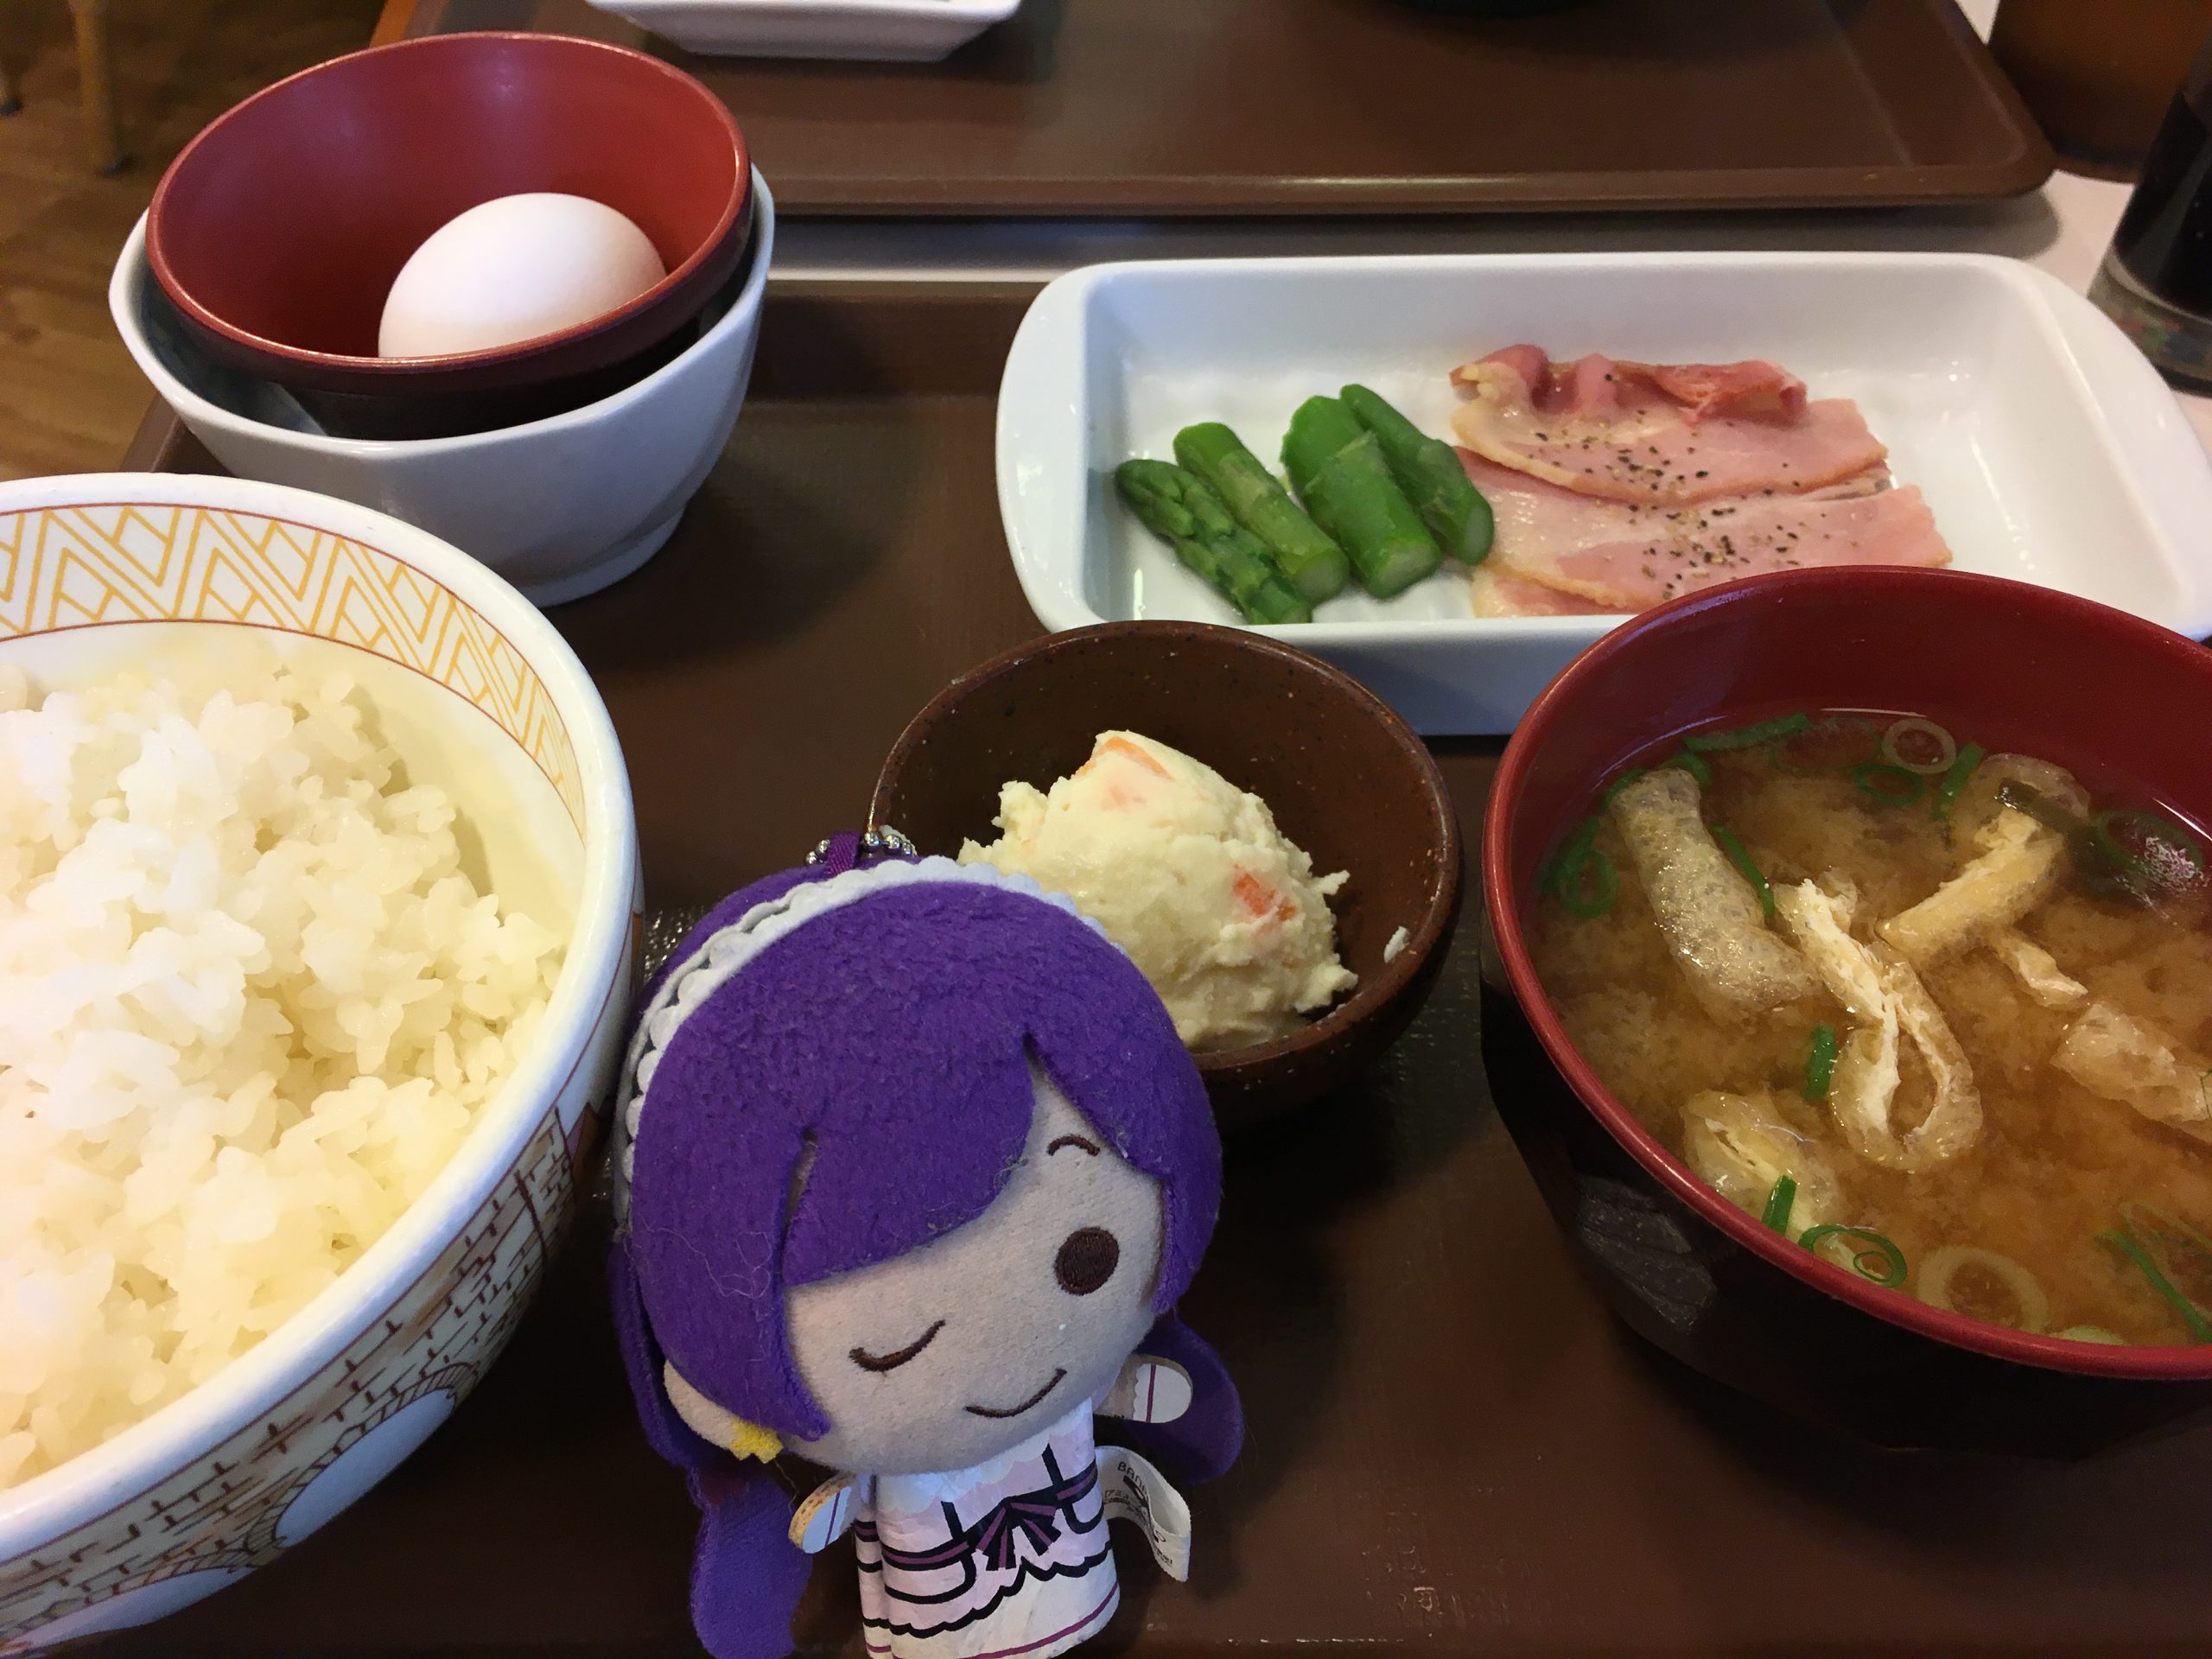 [อร่อยตามรอย] สุคิยะ, ร้านอาหารเซตประหยัดที่ ซาการะ มายุ โปรดปราน